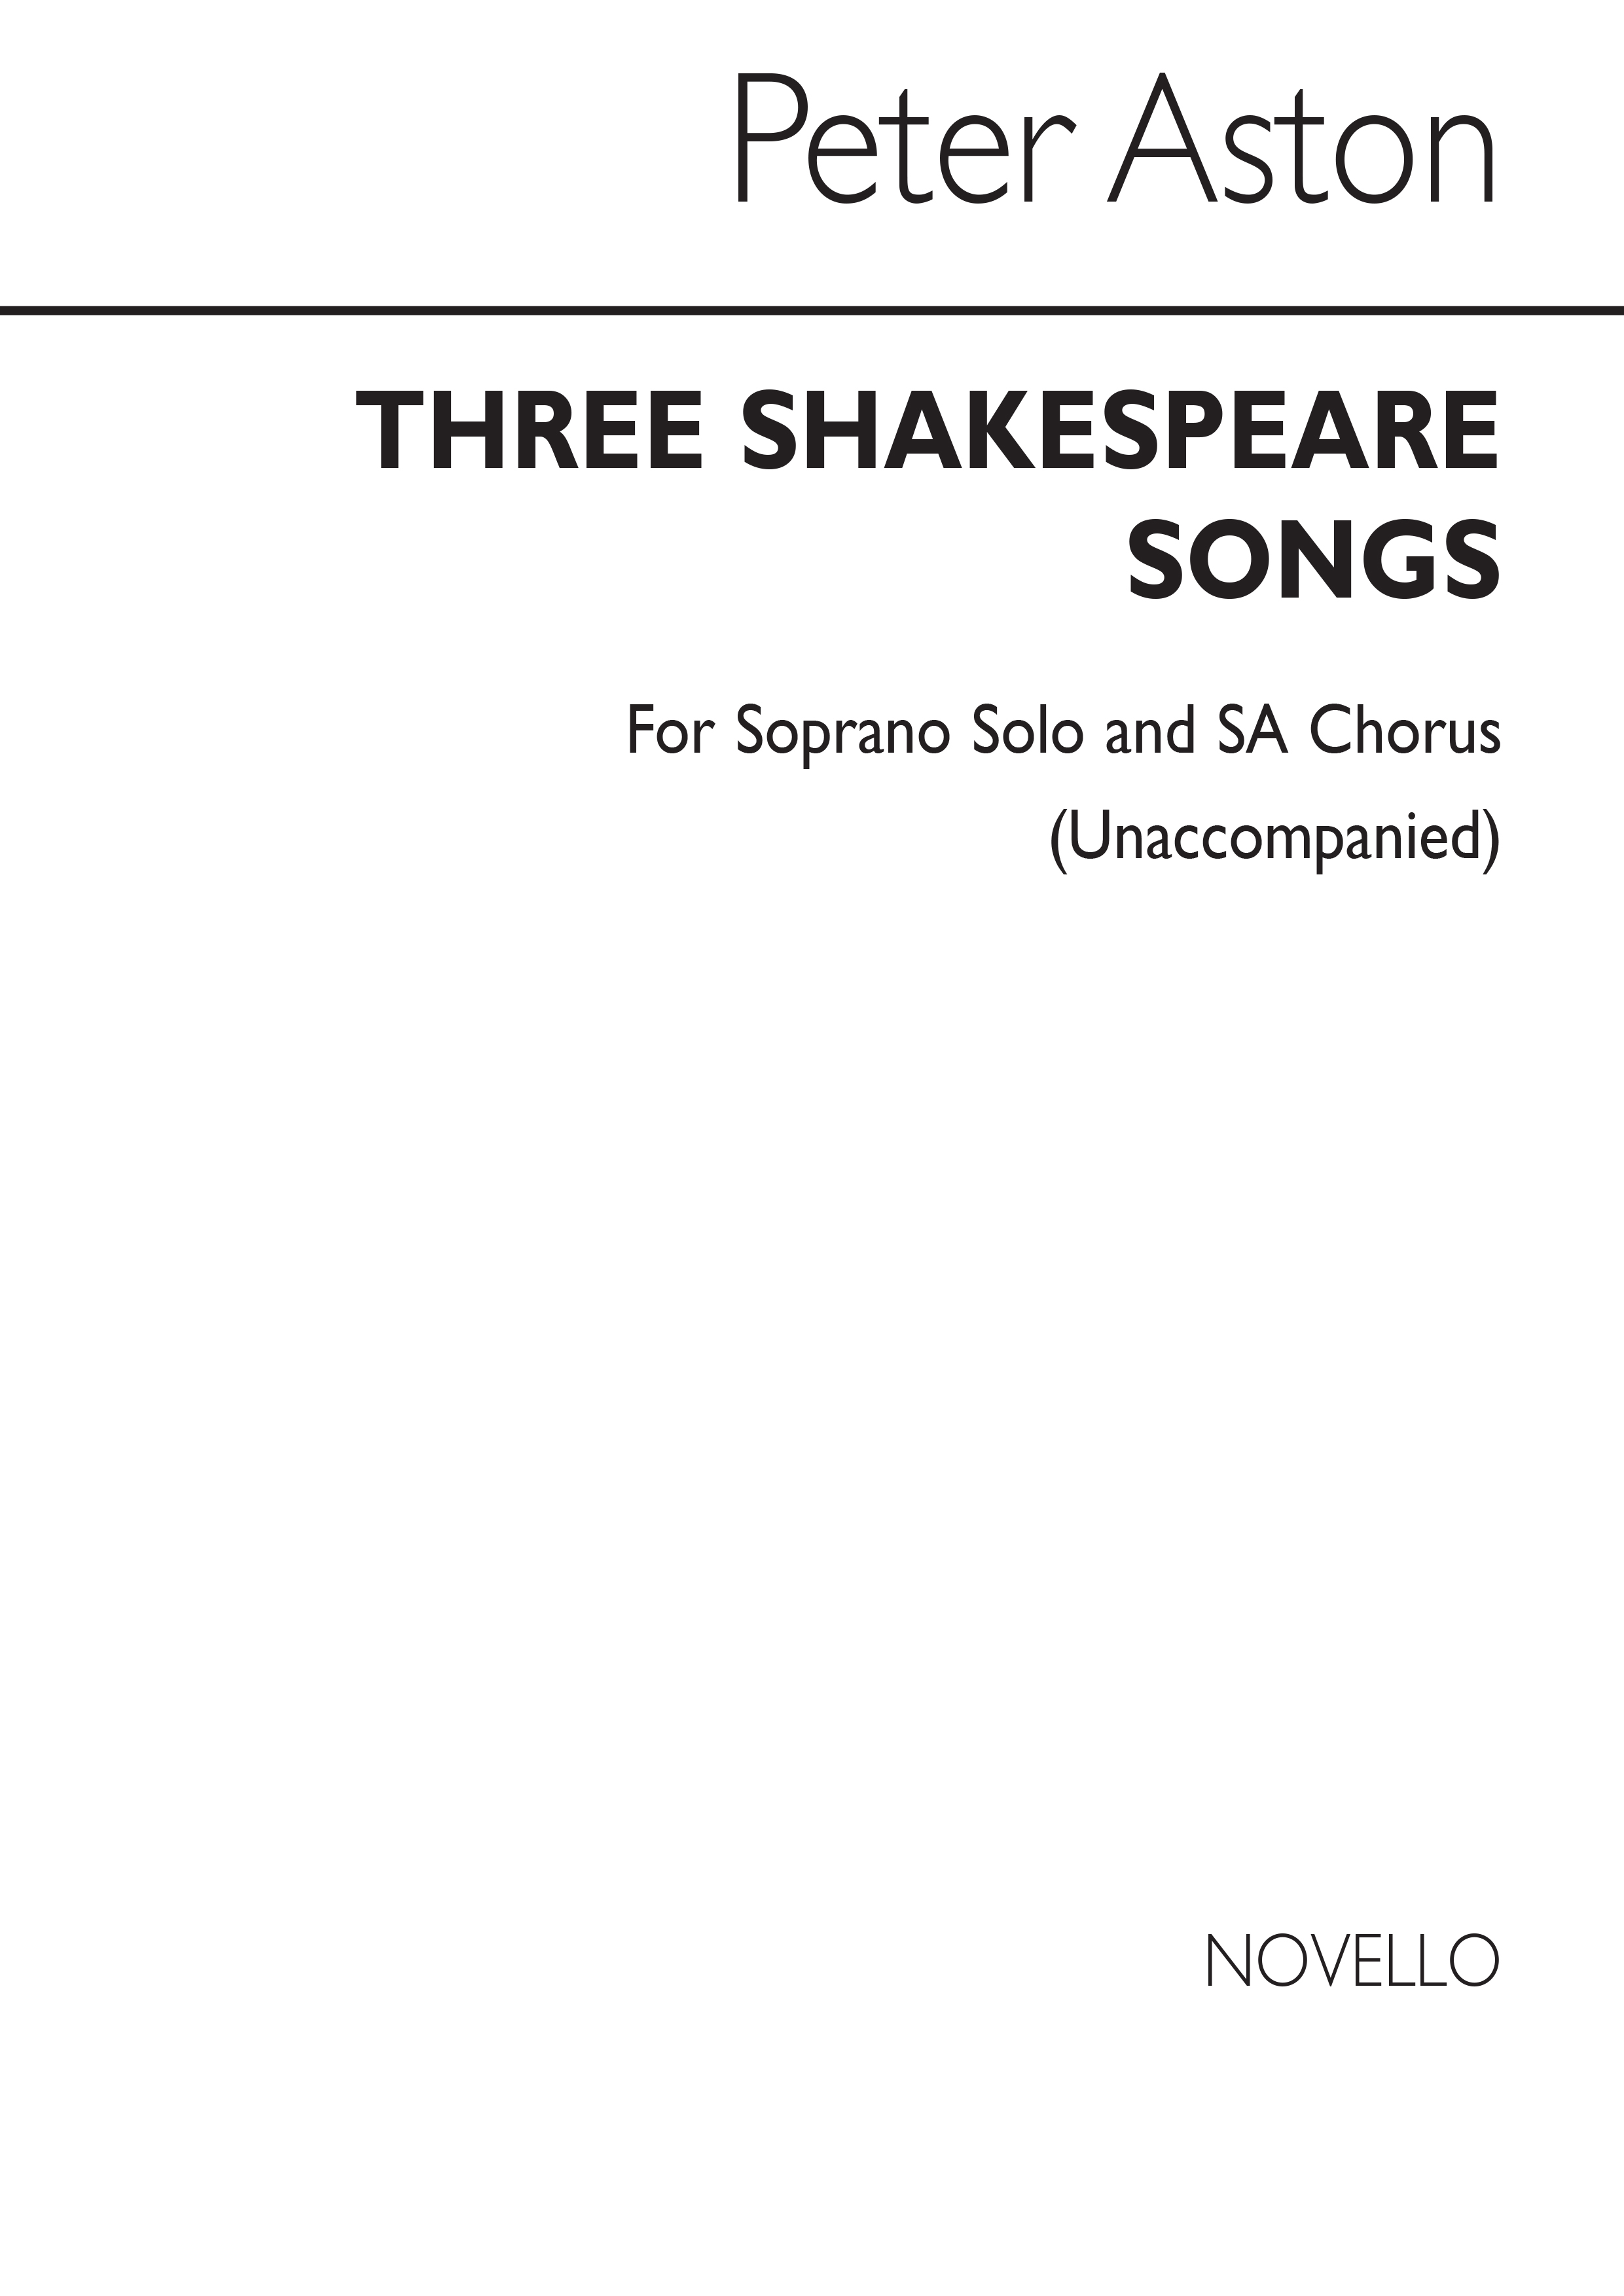 Peter Aston: Three Shakespeare Songs